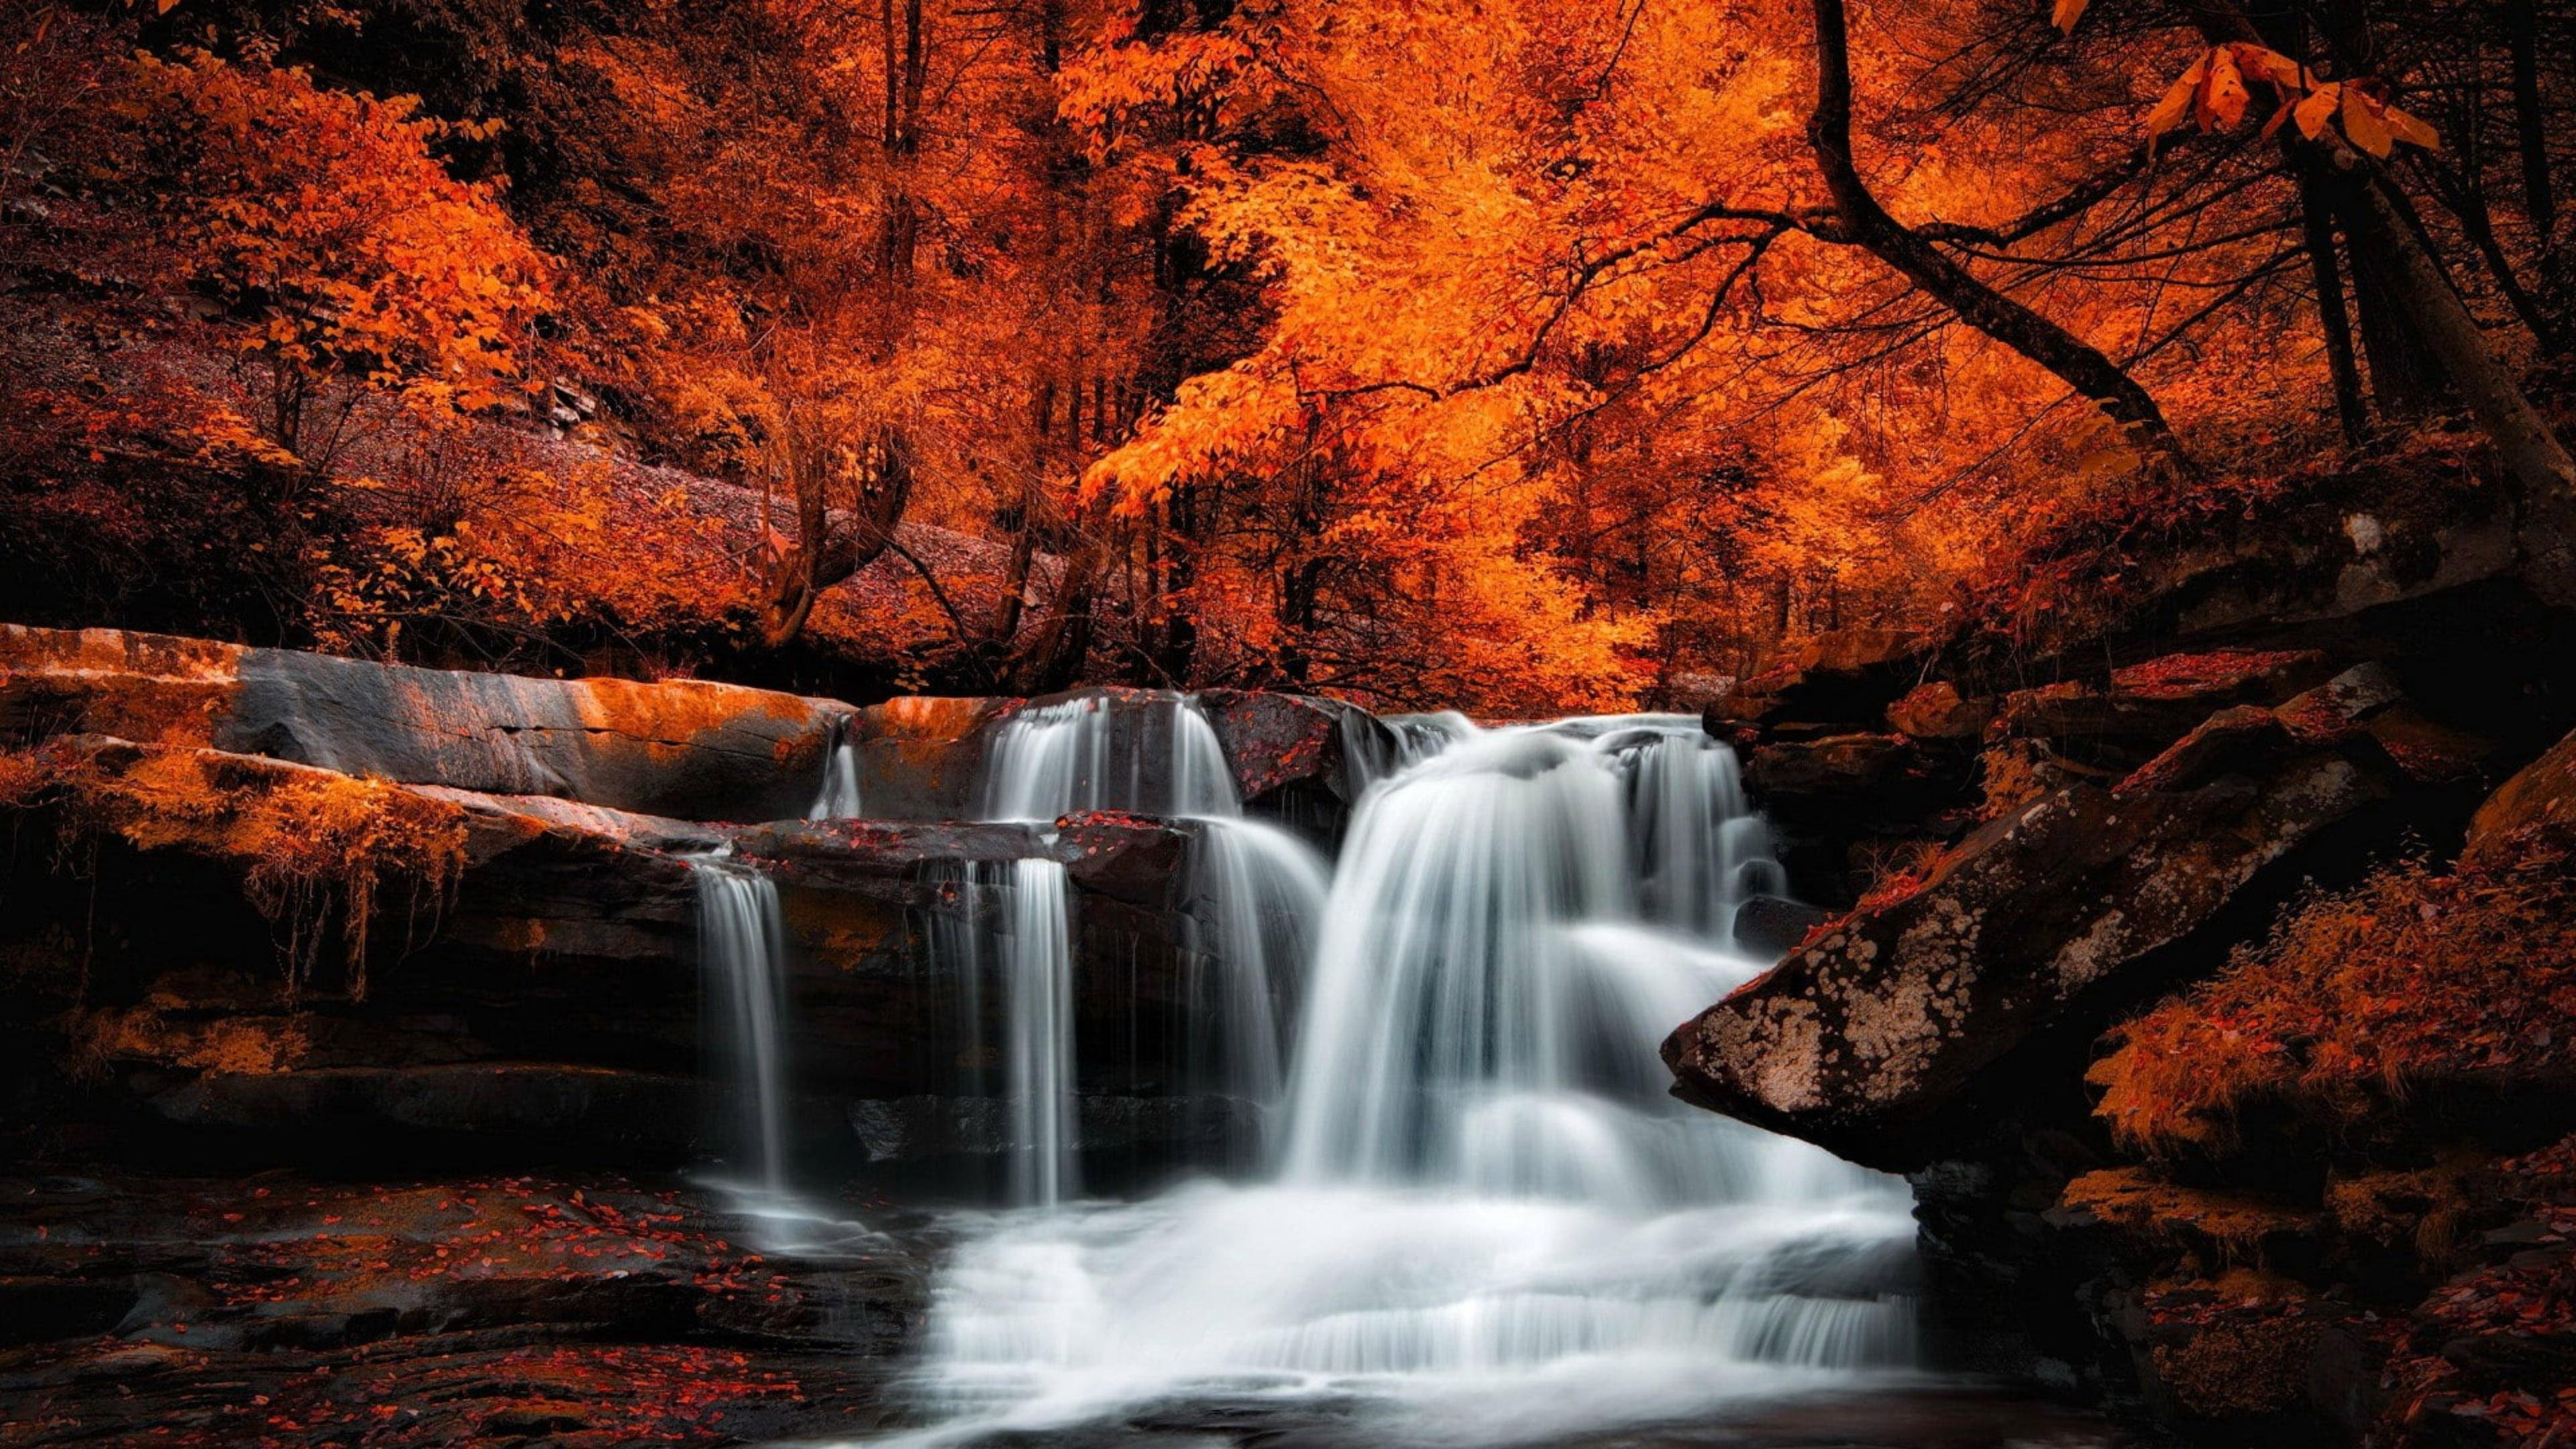 Картинки на заставку. Природа. Красивая природа. Осенний водопад. Красивые пейзажи с водопадами.